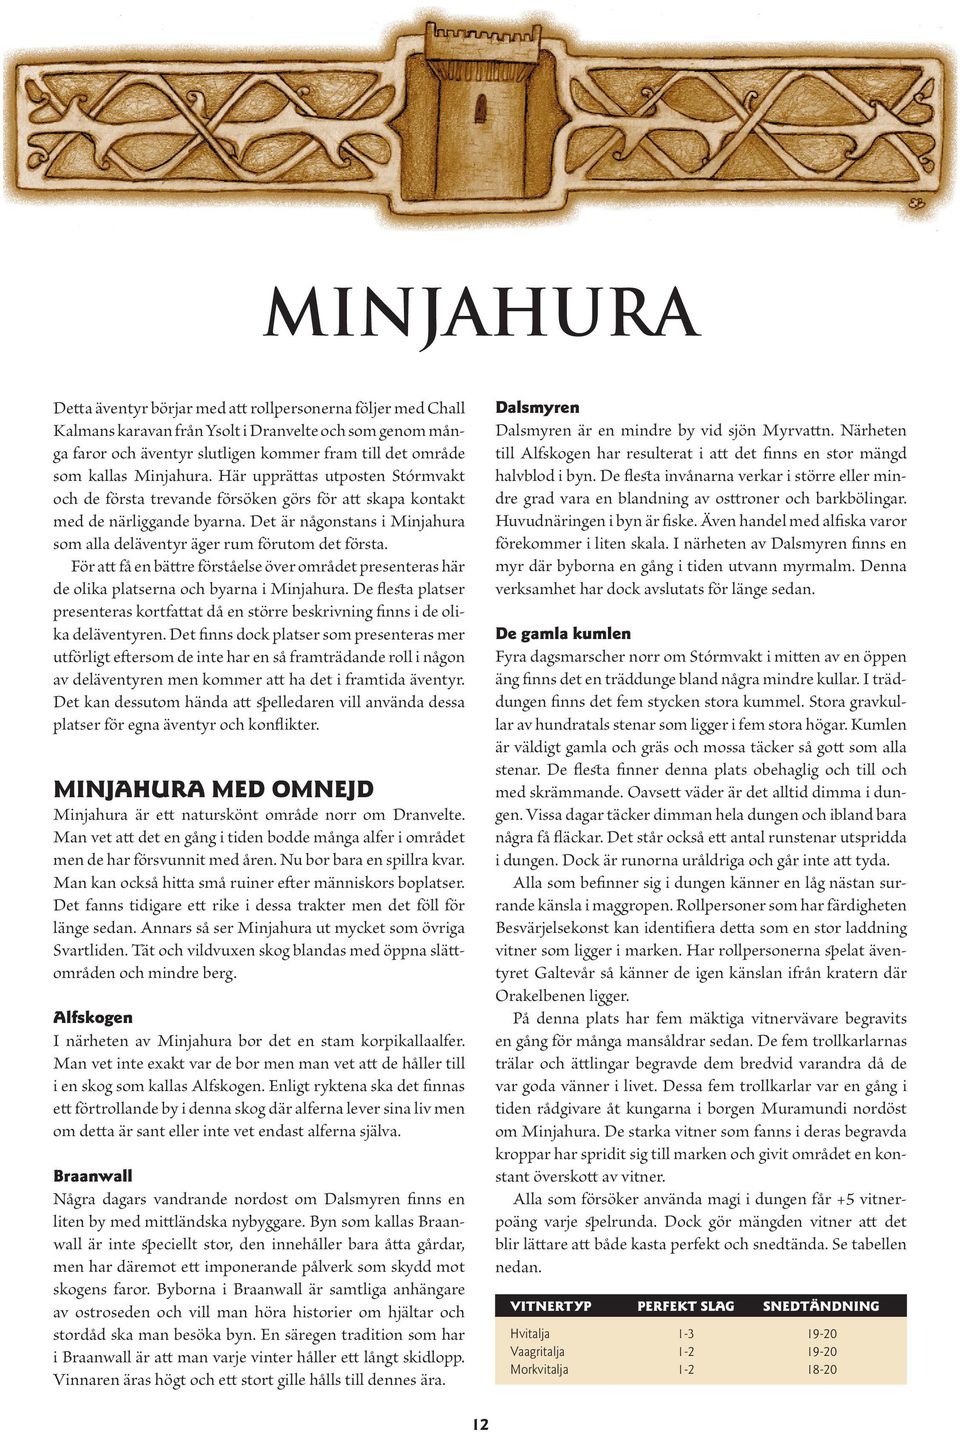 Det är någonstans i Minjahura som alla deläventyr äger rum förutom det första. För att få en bättre förståelse över området presenteras här de olika platserna och byarna i Minjahura.